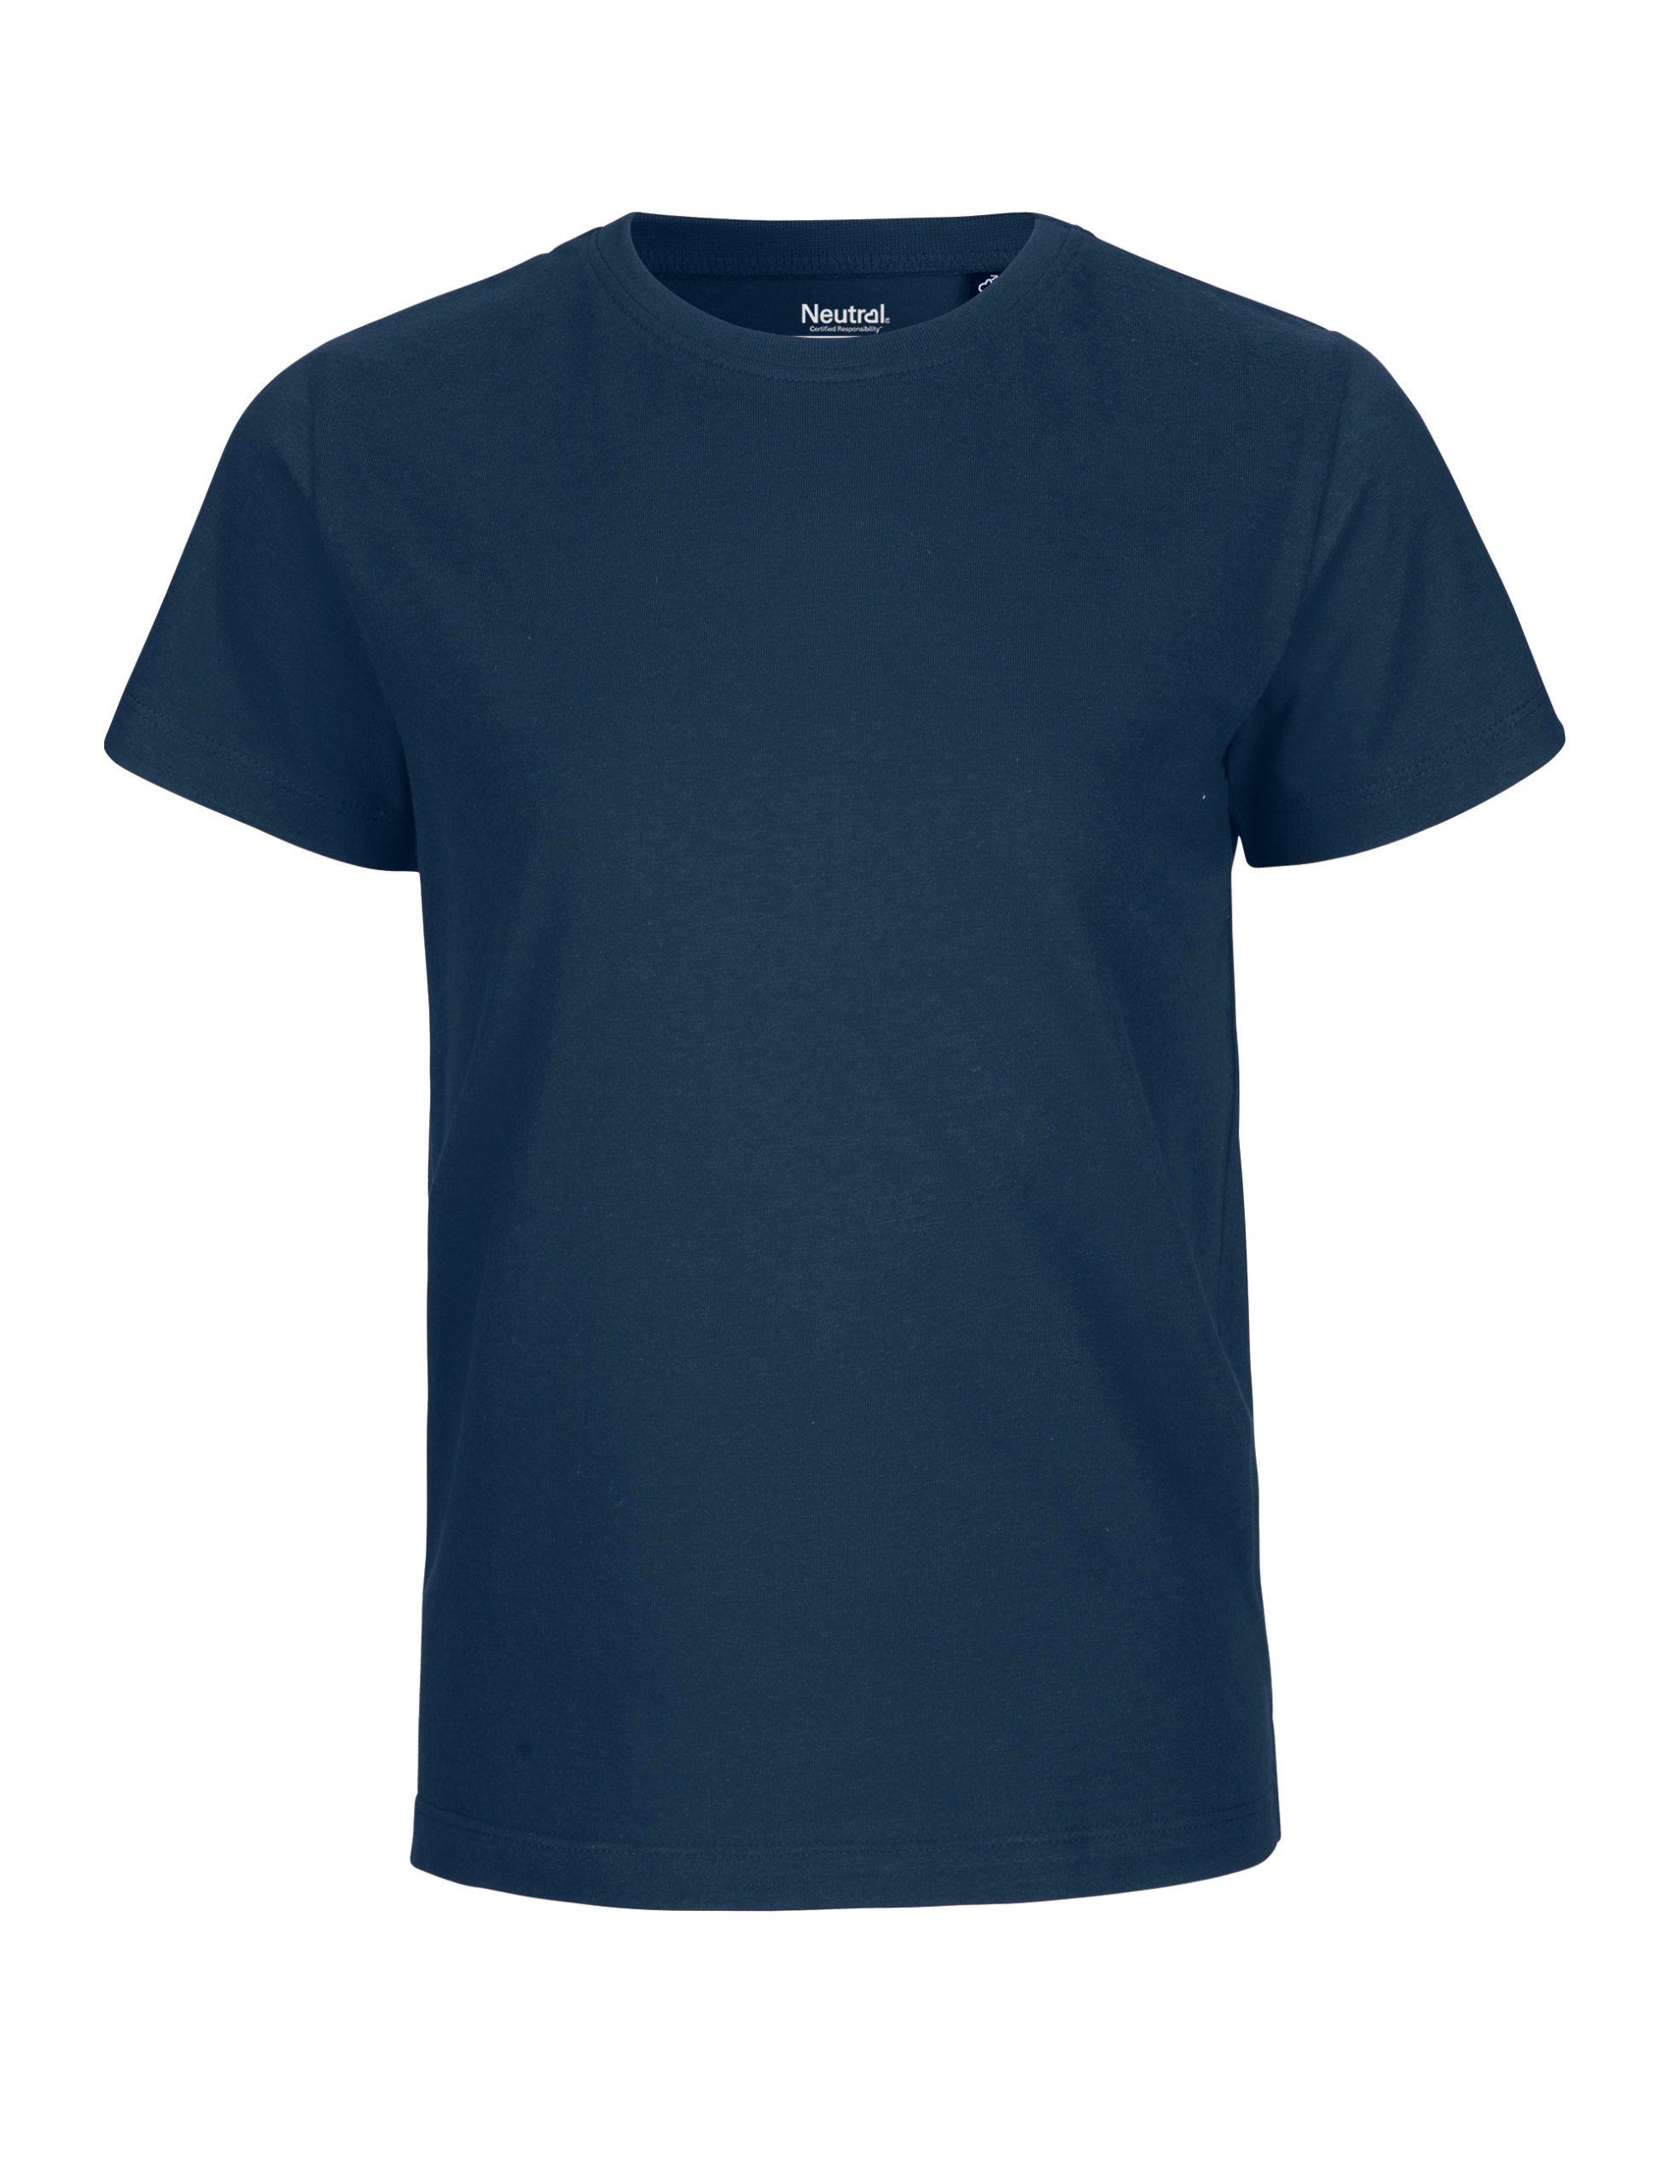 Neutral Kids T-shirt Navy